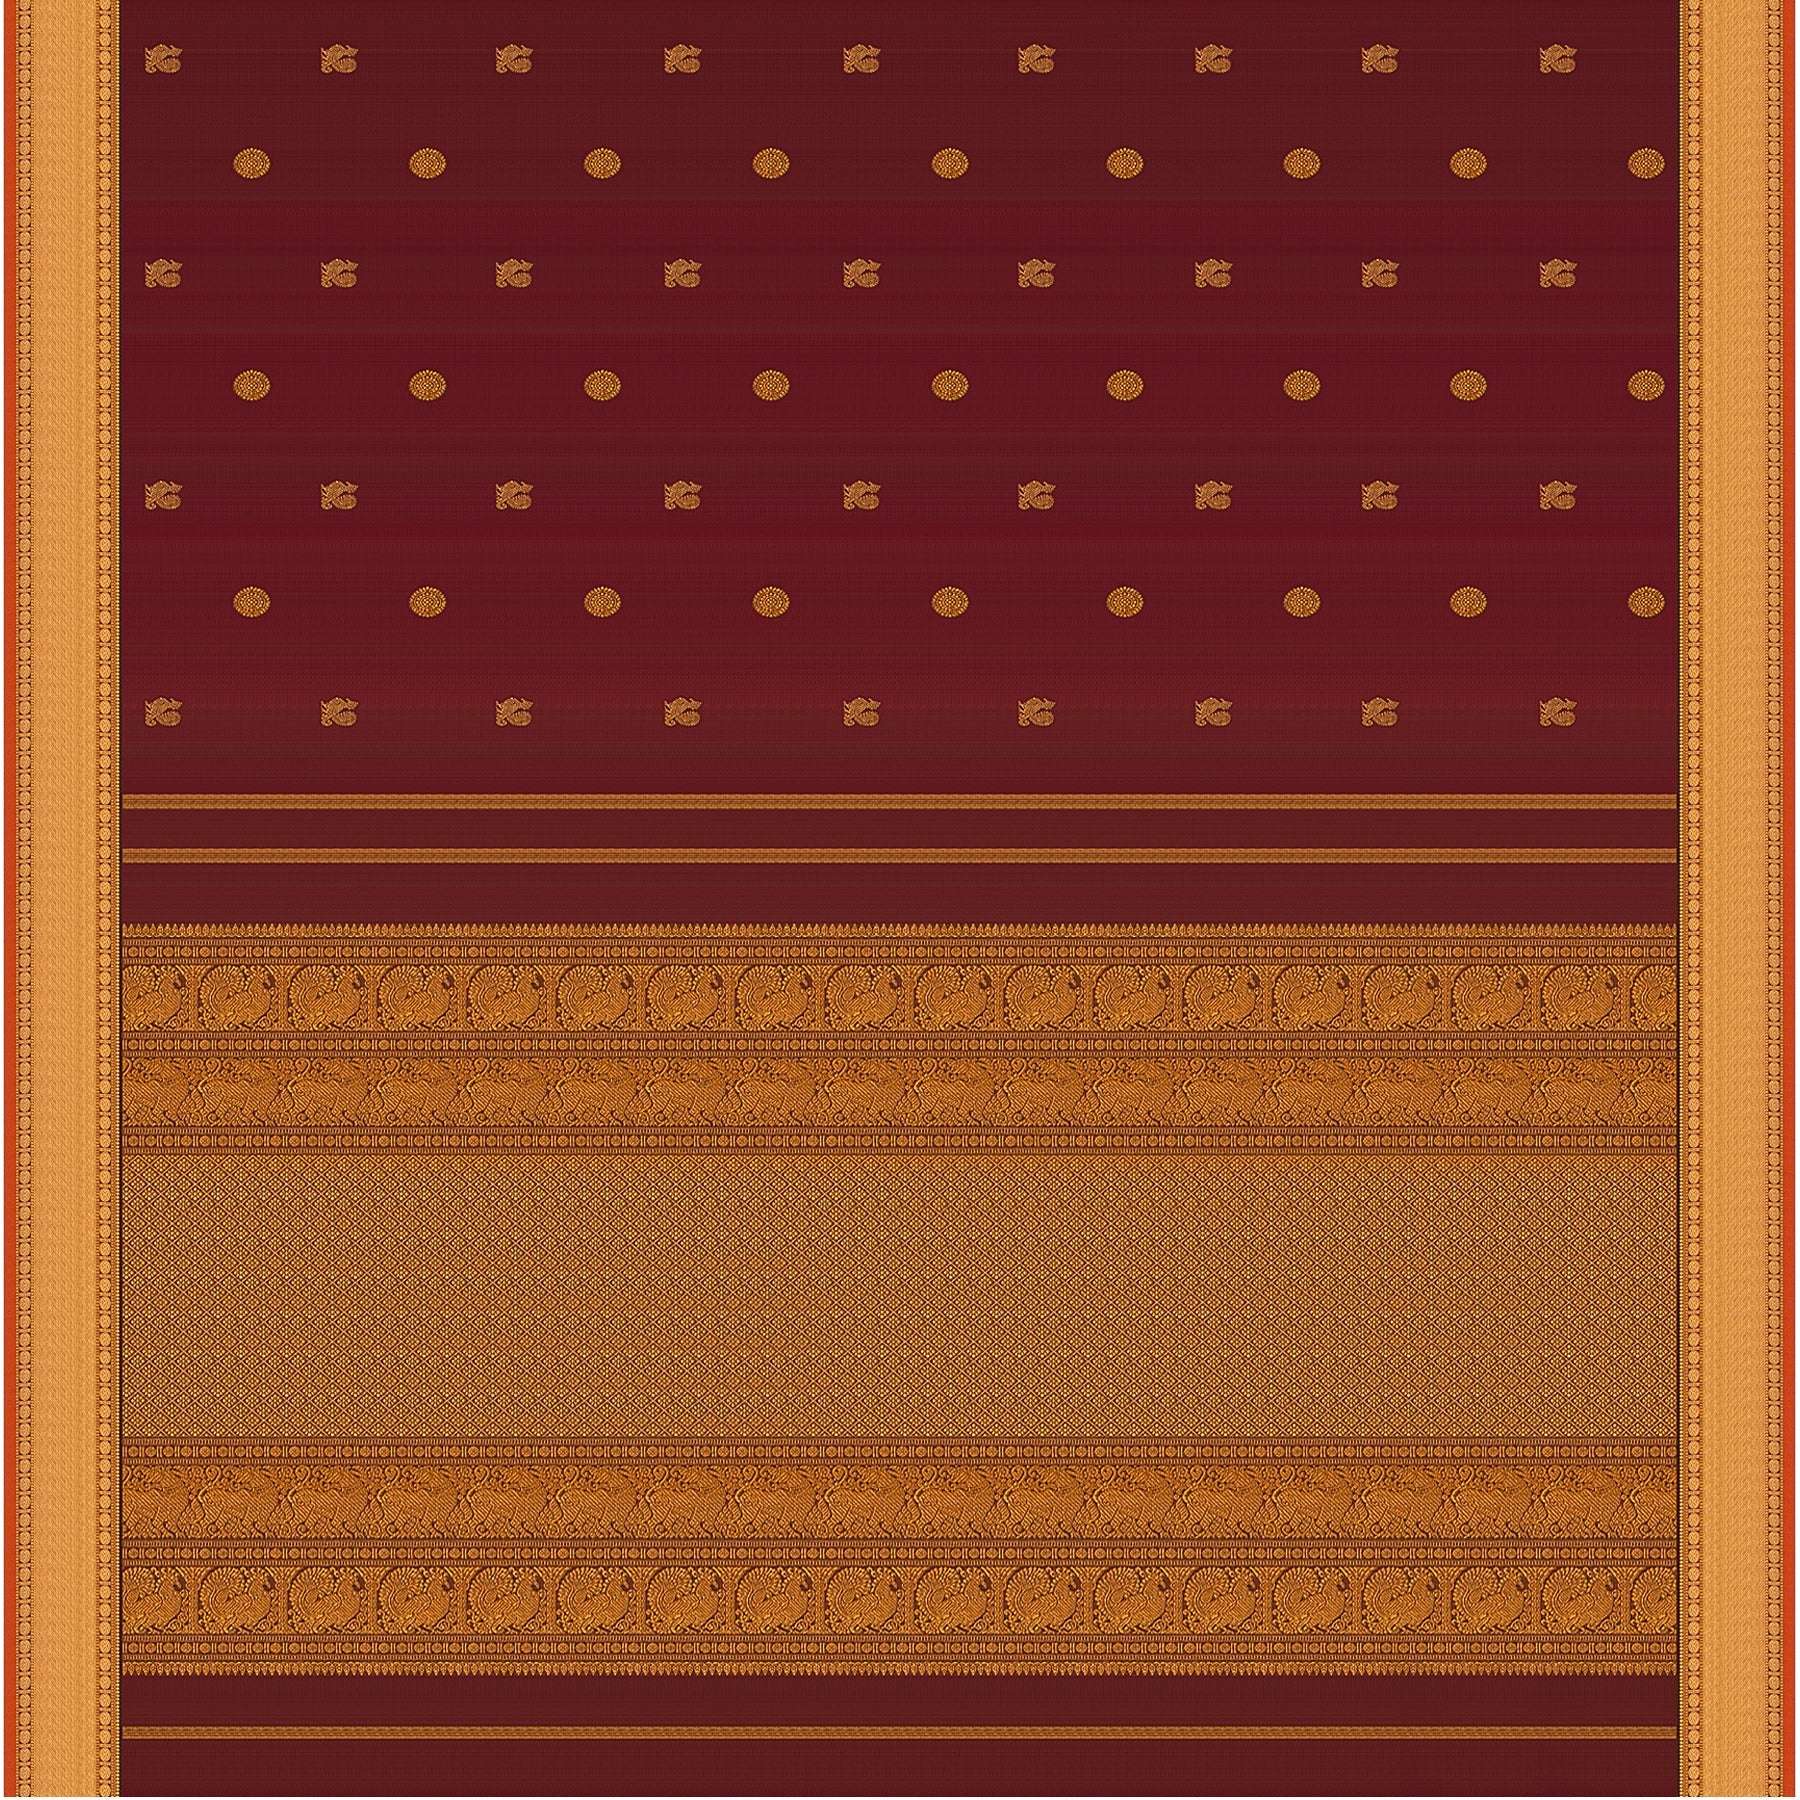 Kanakavalli Kanjivaram Silk Sari 22-110-HS001-07484 - Full View